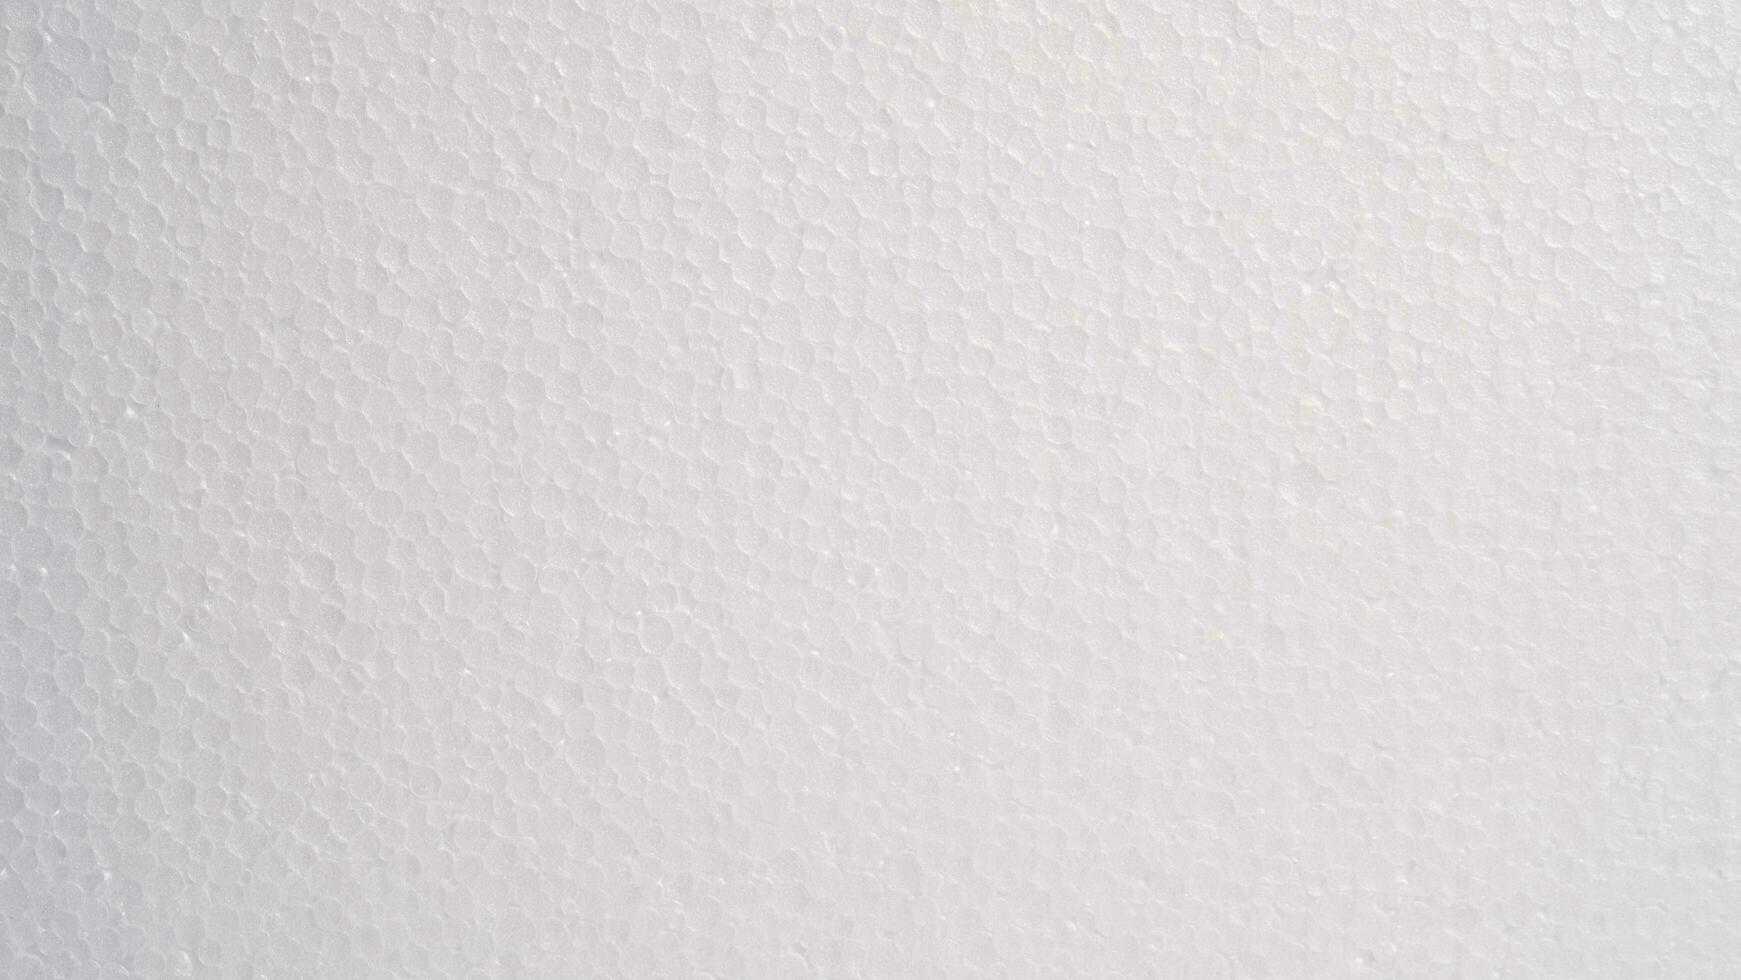 Weiß Schaum Blatt oben Sicht. klein und groß klar Schaum Perlen, Polystyrol Blatt Oberfläche im Nahaufnahme, Nahansicht nahtlos Hintergrund foto